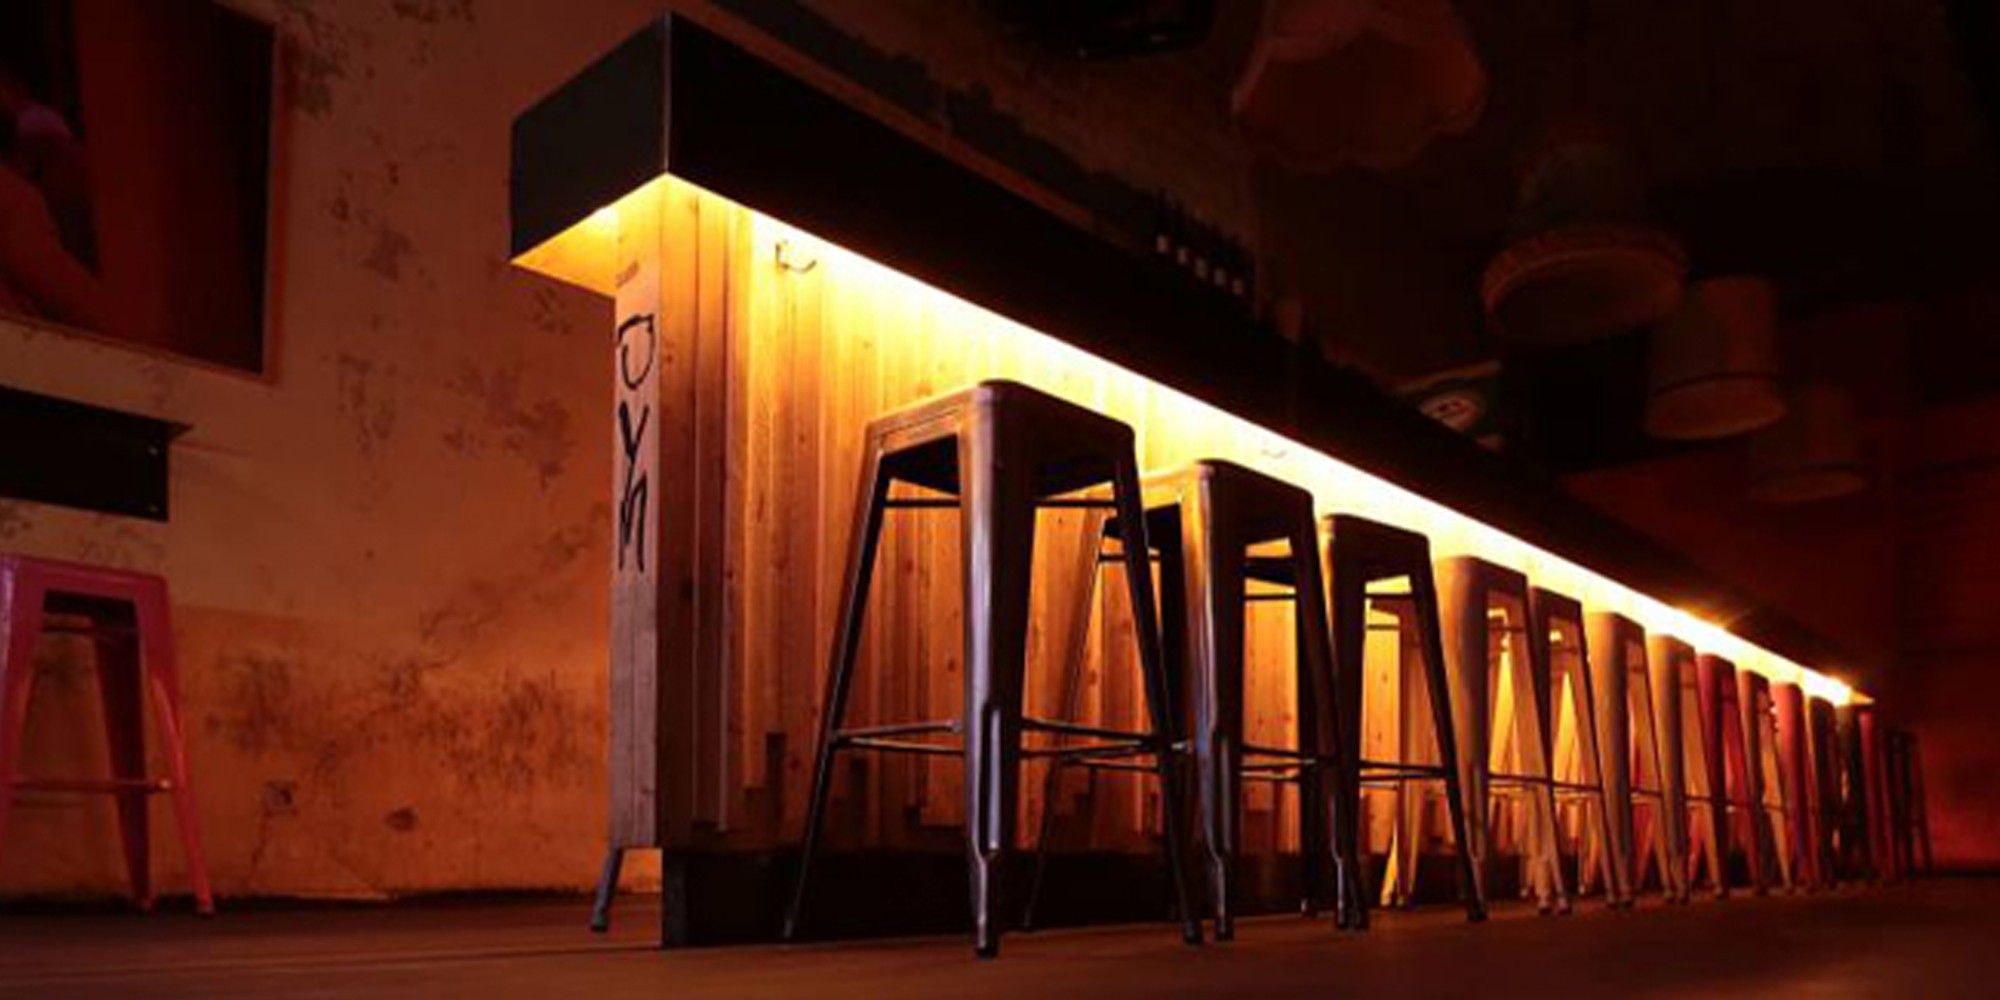 Ginsburg Bar & Friedrich Cafébar